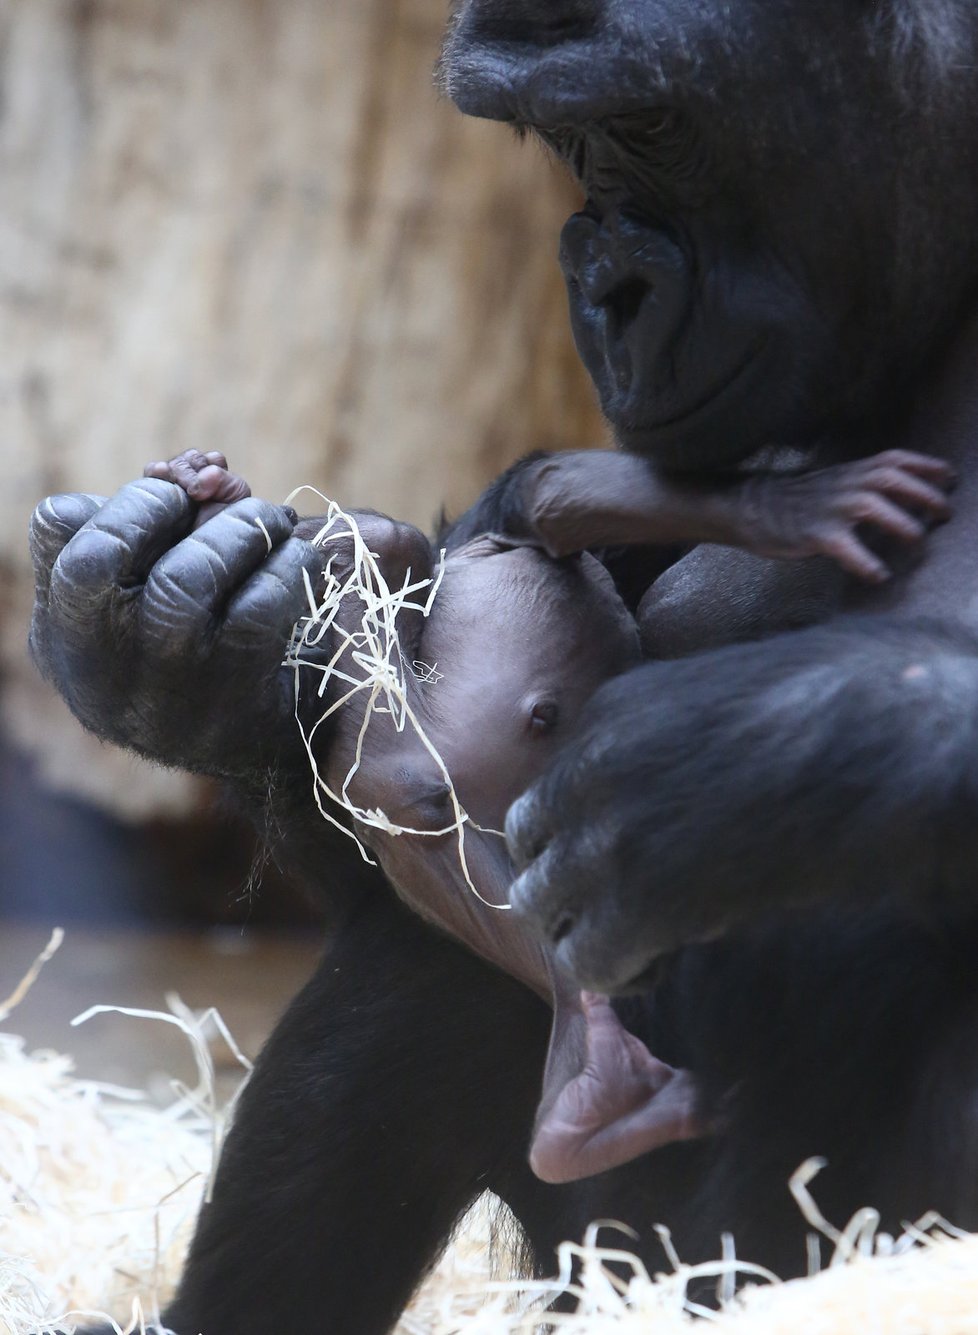 Jméno gorilího chlapečka vyberou návštěvníci zoo